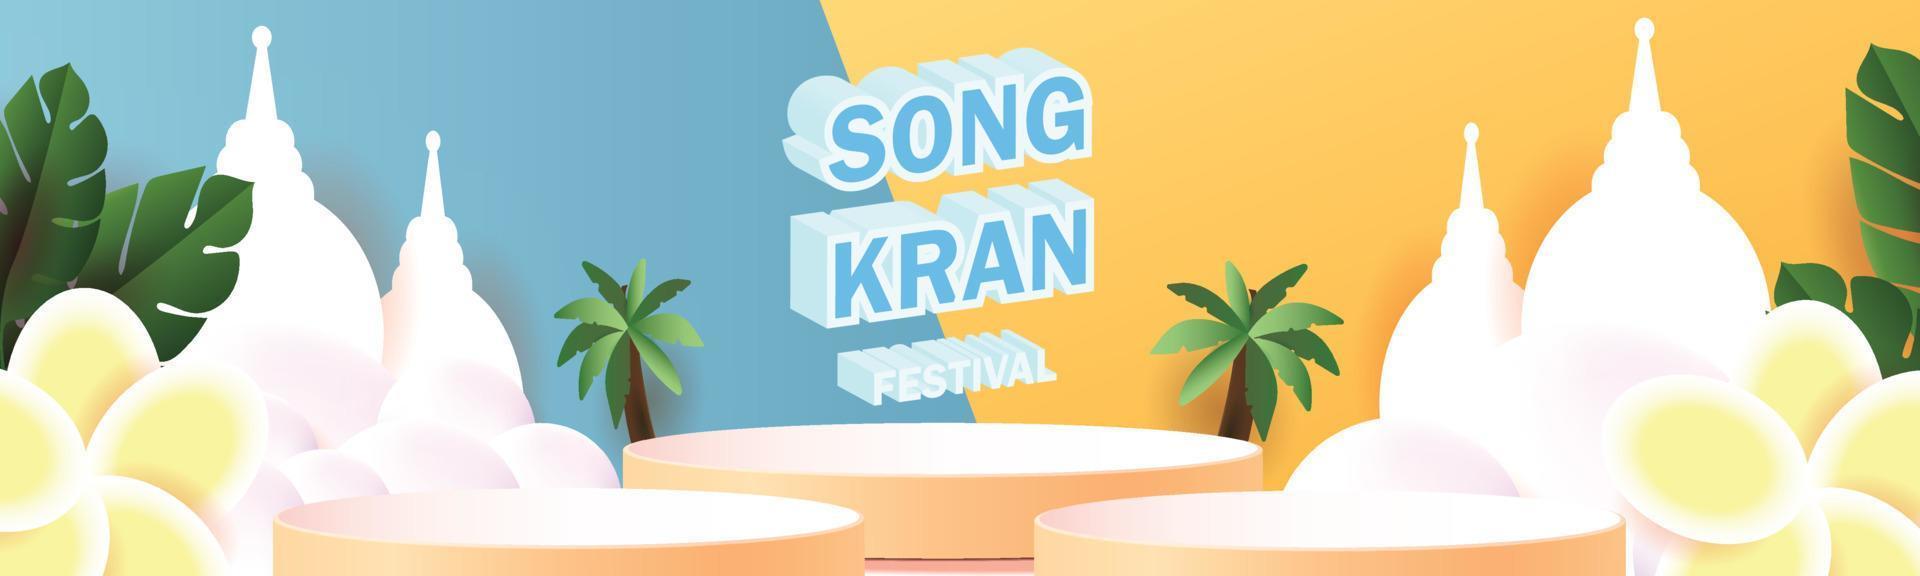 felice festival songkran in tailandia podio vendita poster fiore vecter su sumer aprile modello concetto vettore